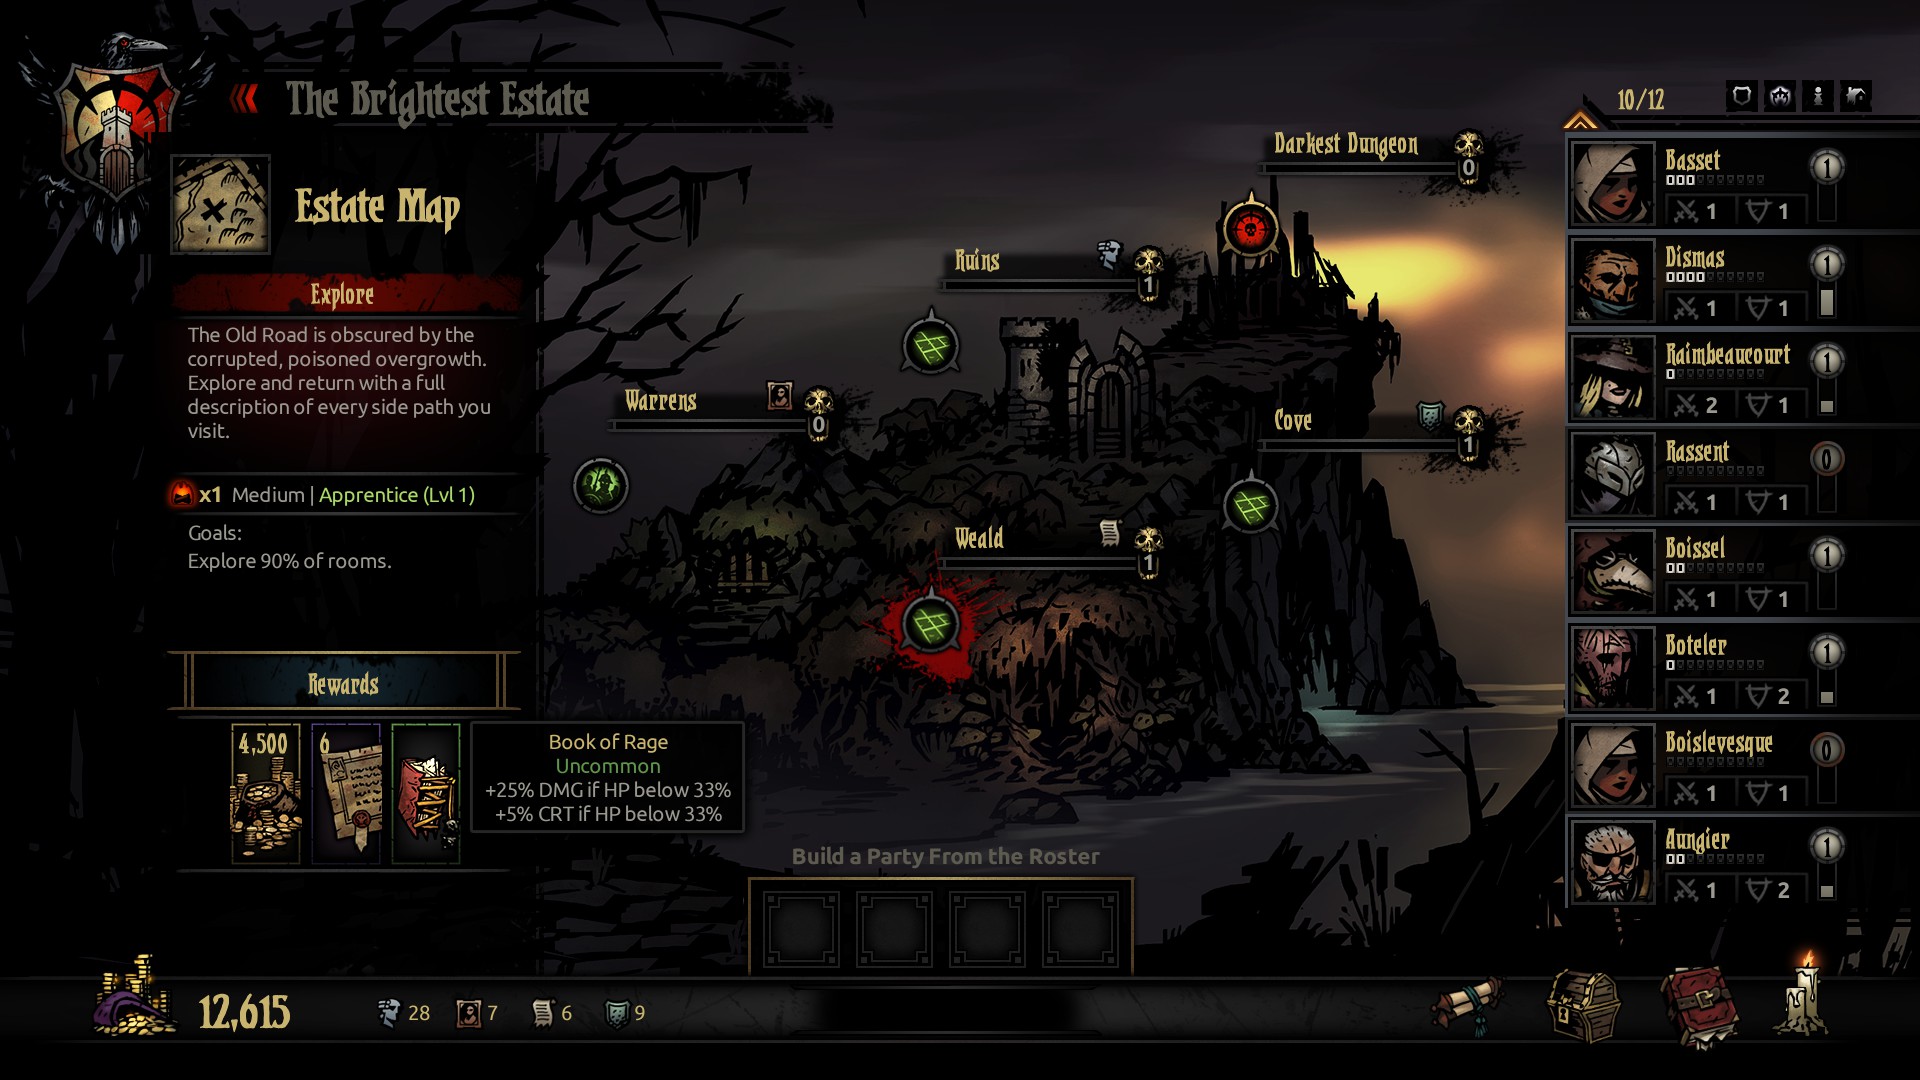 darkest dungeon installed a mod now all trinkets are gone